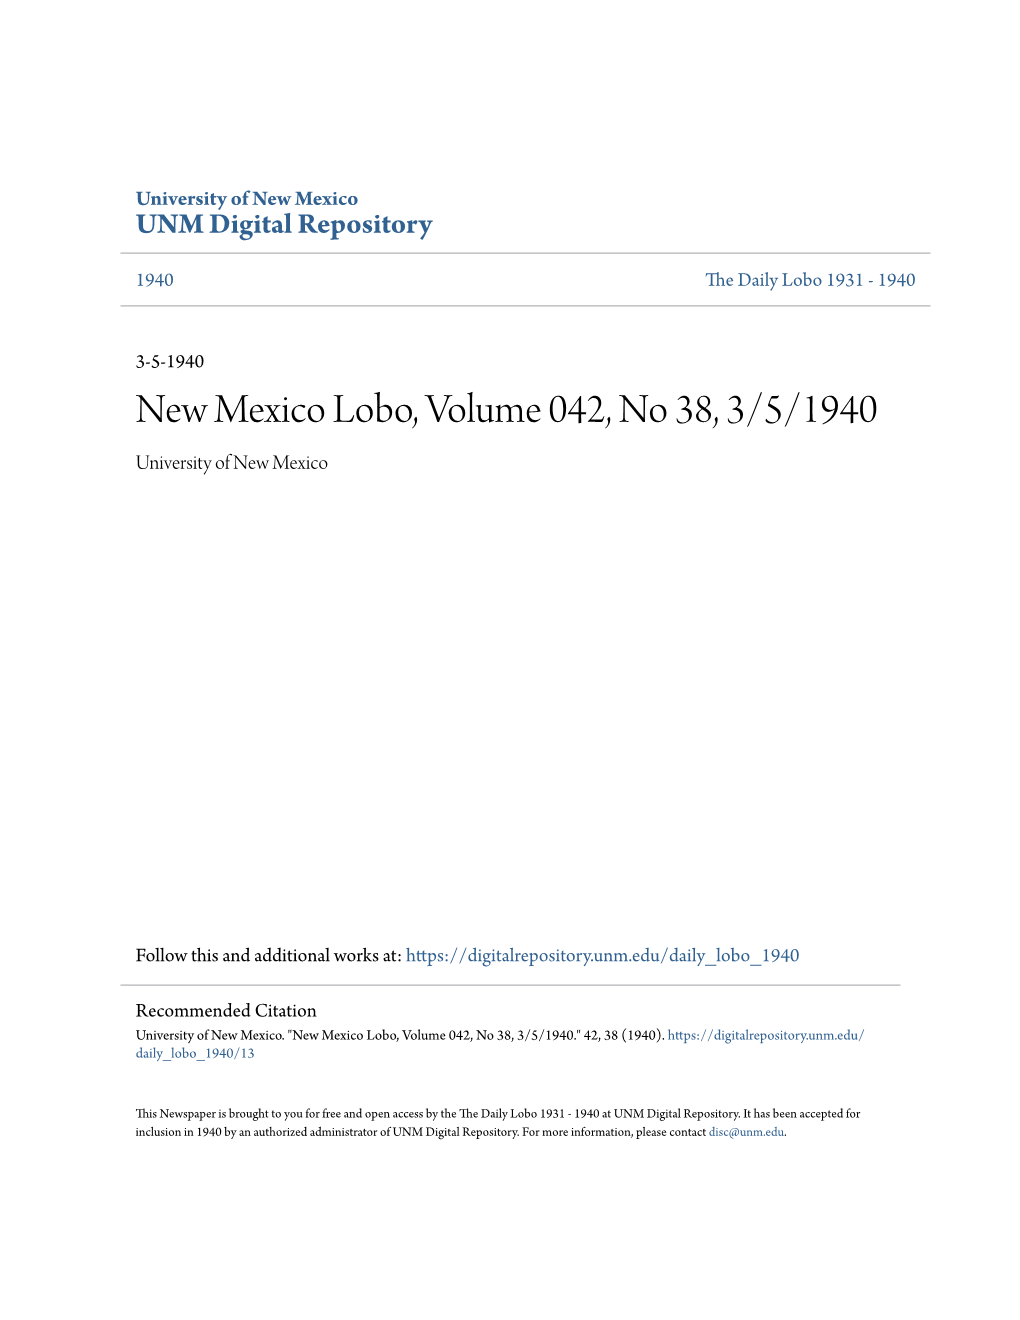 New Mexico Lobo, Volume 042, No 38, 3/5/1940 University of New Mexico